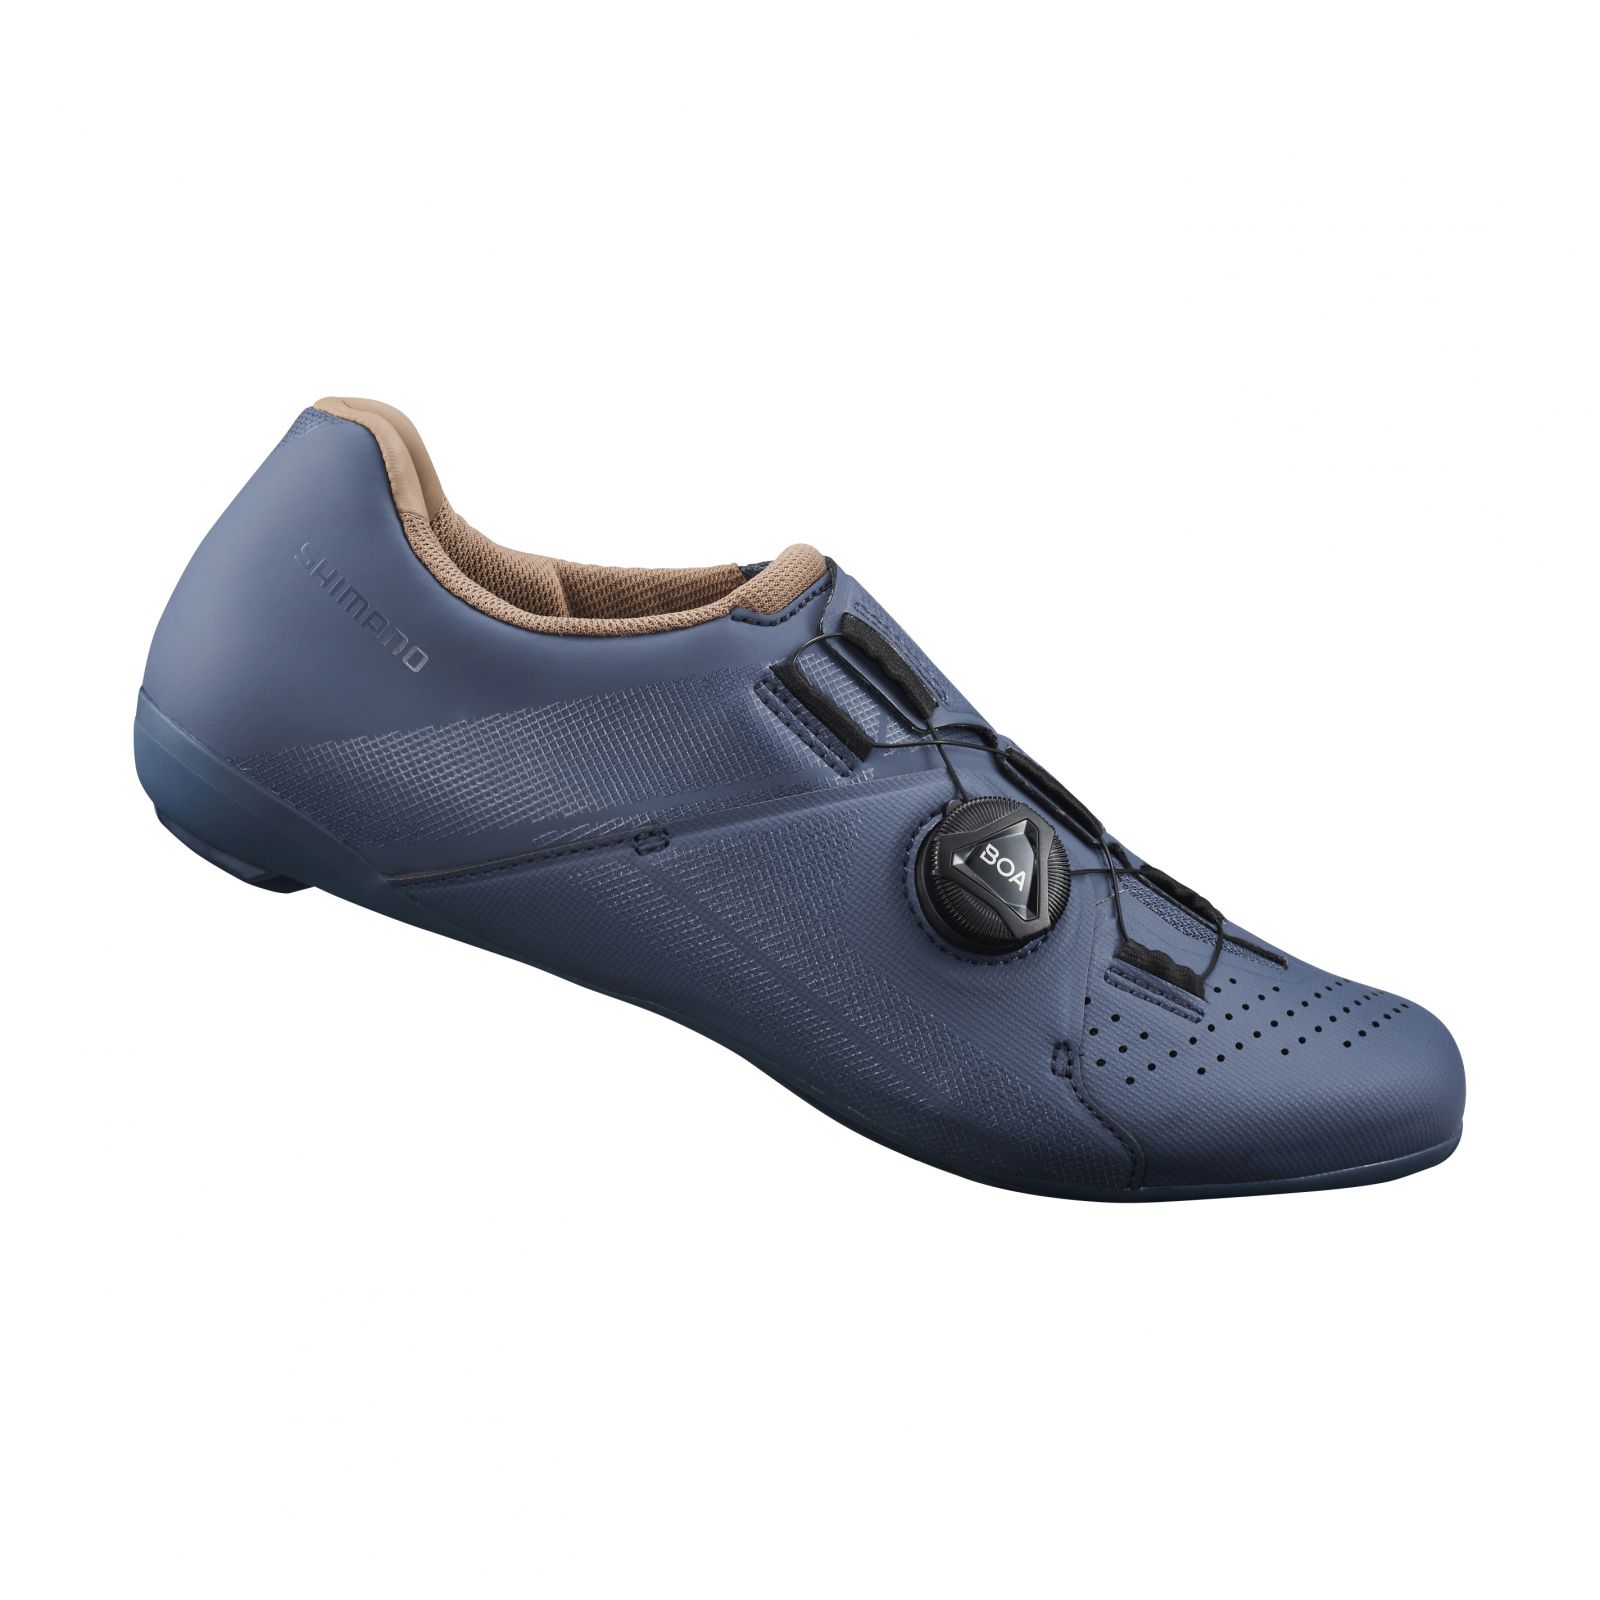 SHIMANO silniční obuv SH-RC300W, dámská, modrá indigo, 41